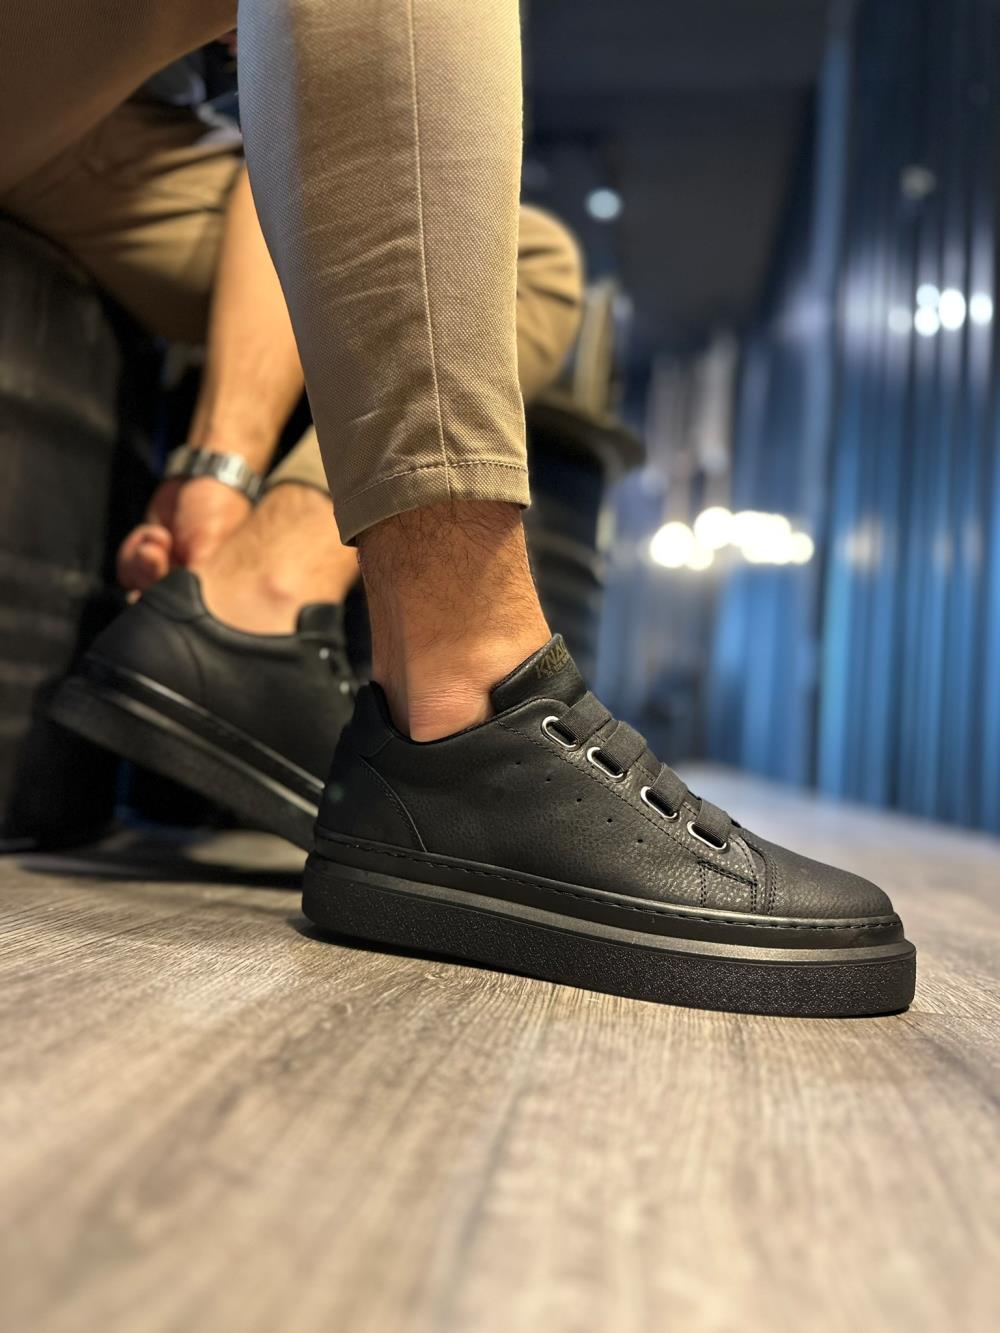 CLZ941  Günlük Ayakkabı  Siyah (Siyah Taban)